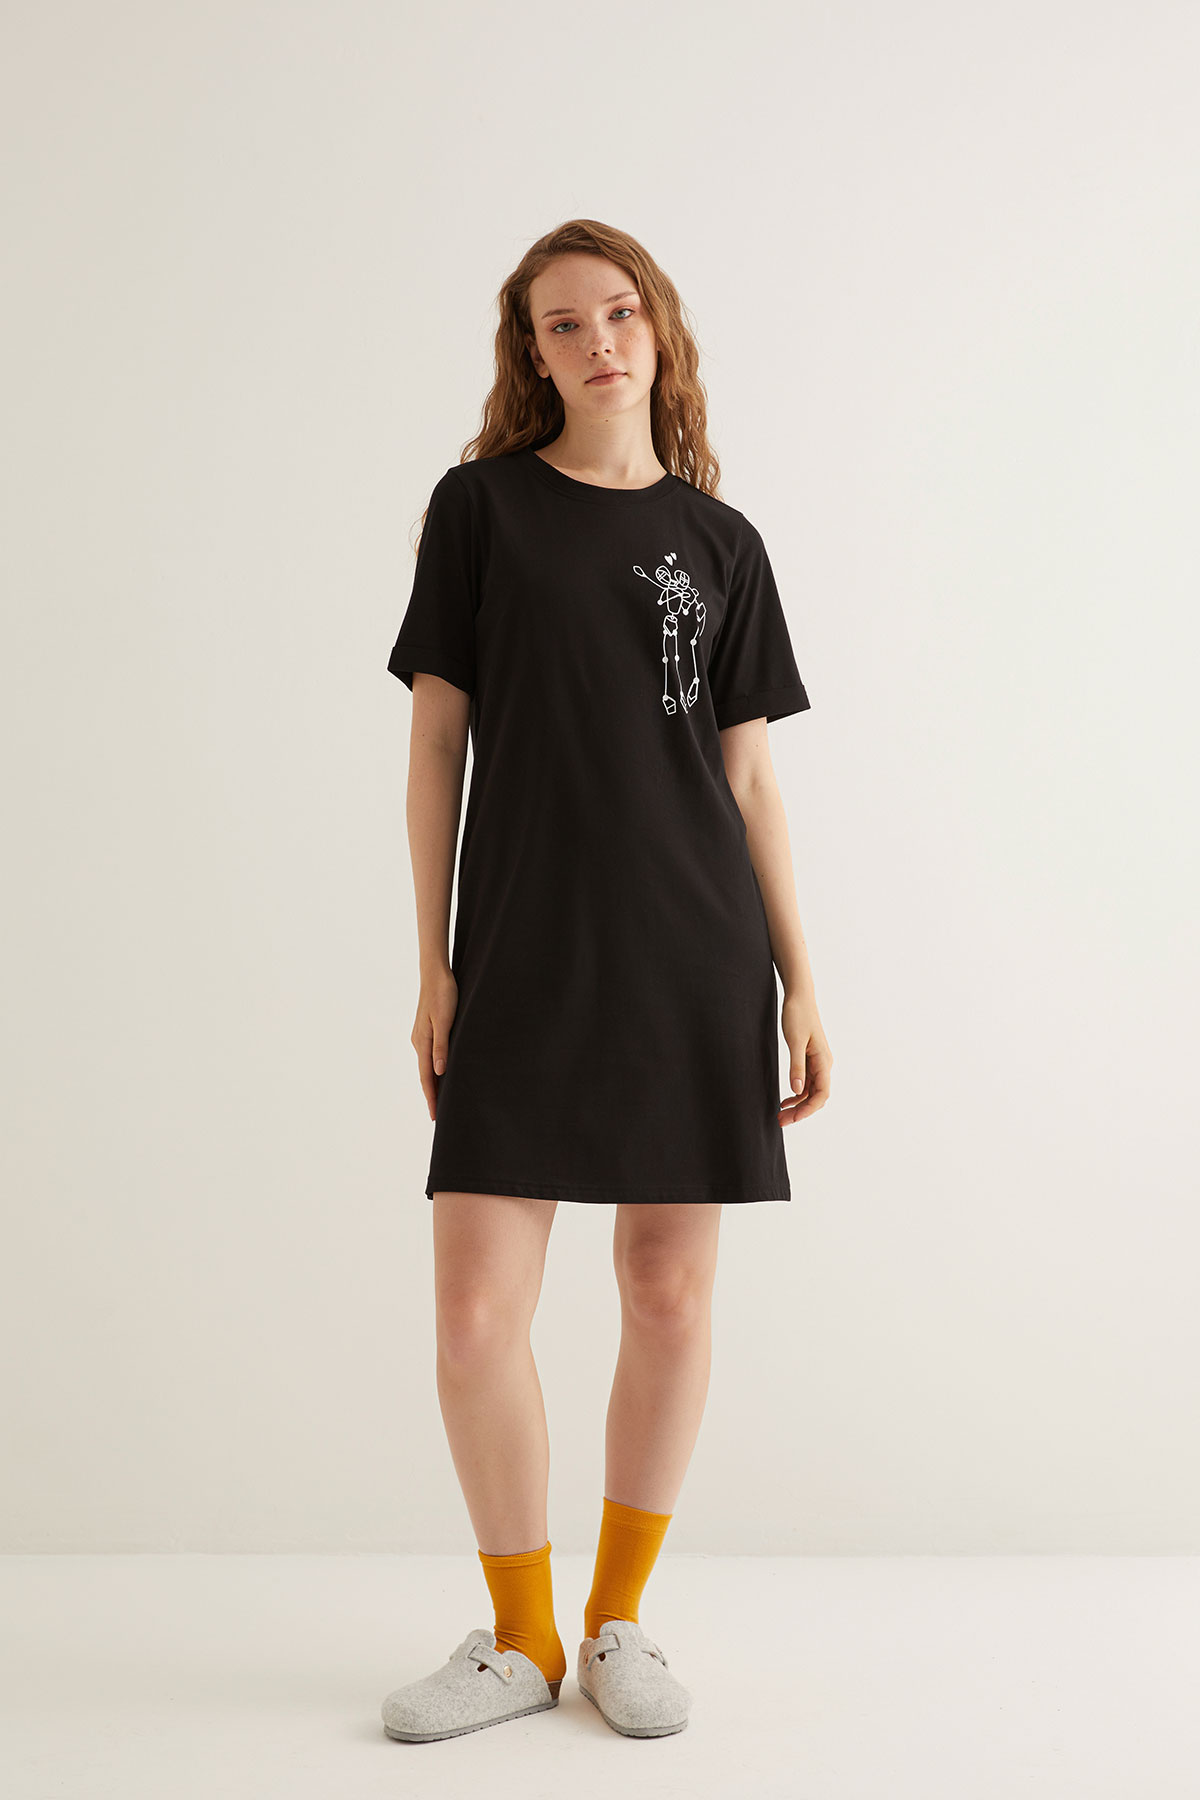 Kadın Pamuklu Baskı Detaylı Kısa Kollu T-shirt Elbise